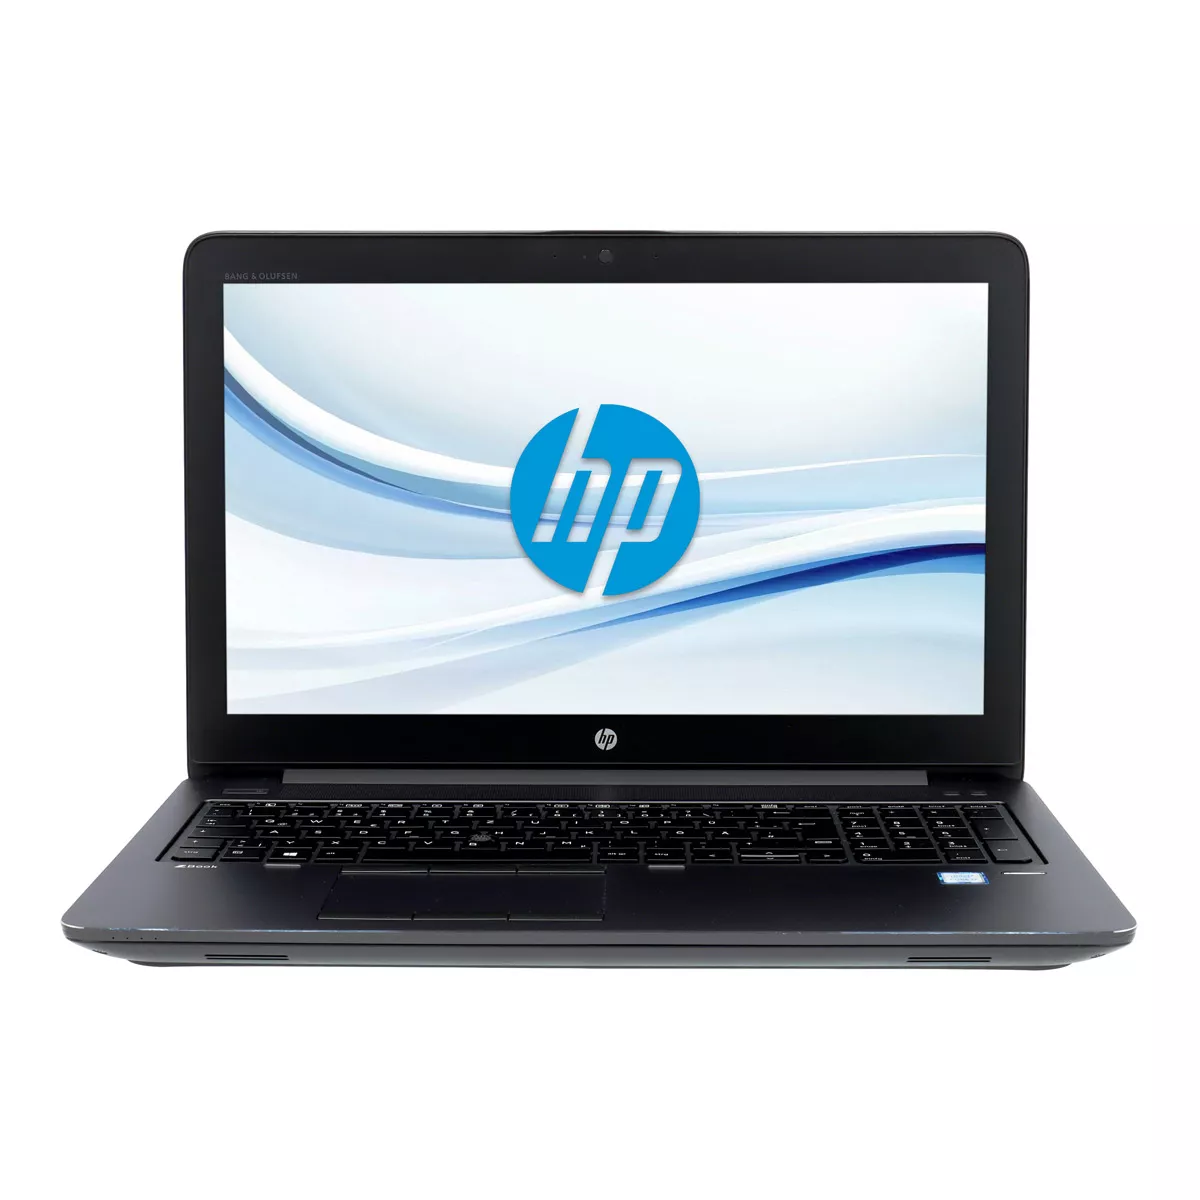 HP ZBook 15 G3 Core i7 6820HQ nVidia Quadro M600M Full-HD 32 GB 500 GB M.2 SSD Webcam A+